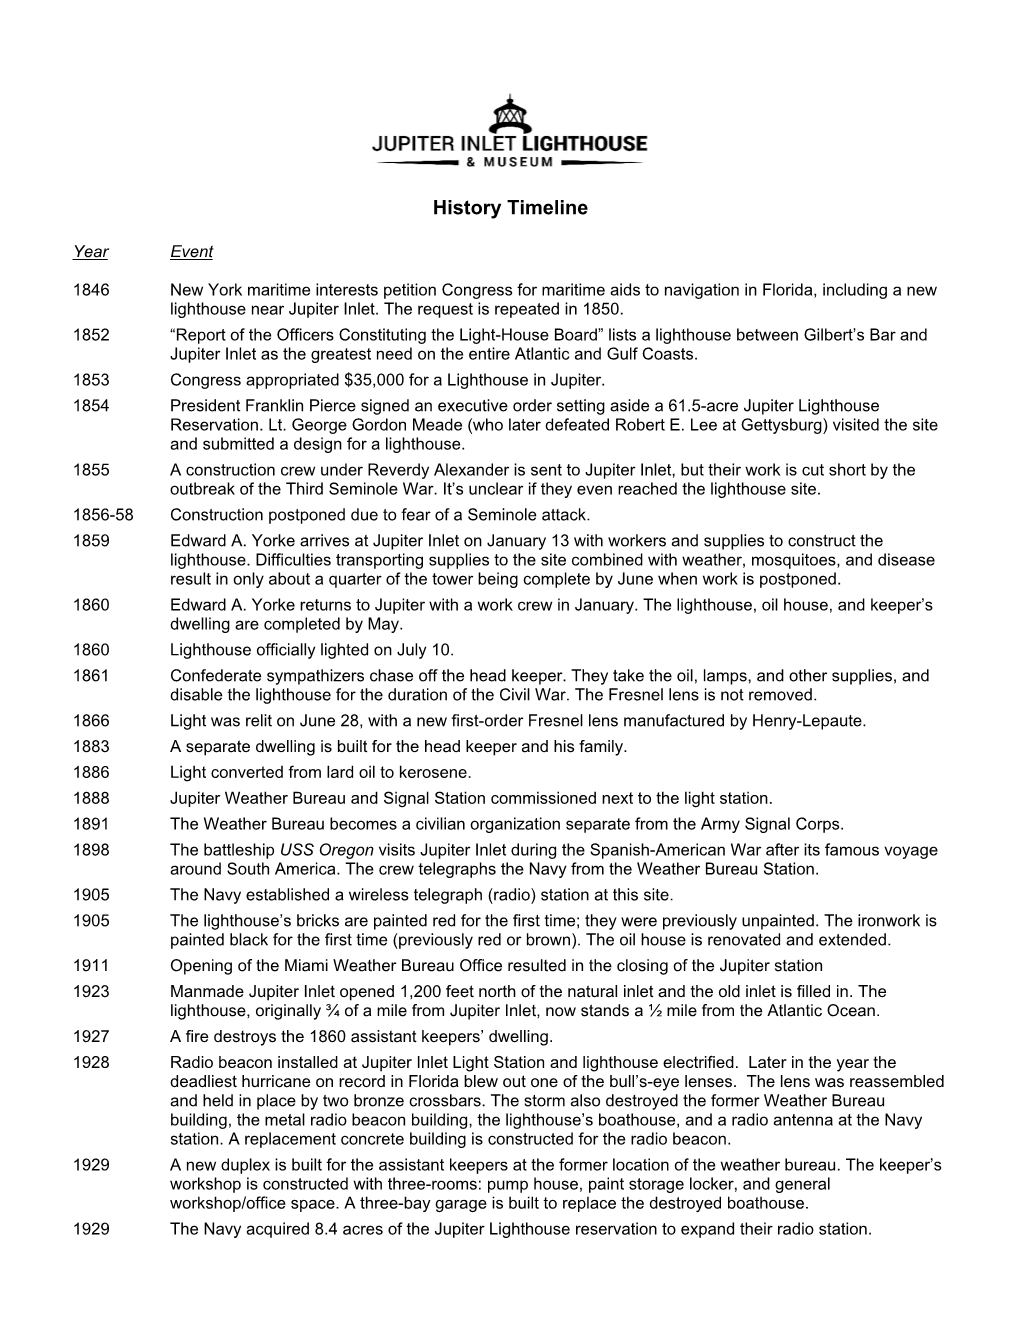 Jupiter Inlet Lighthouse History Timeline